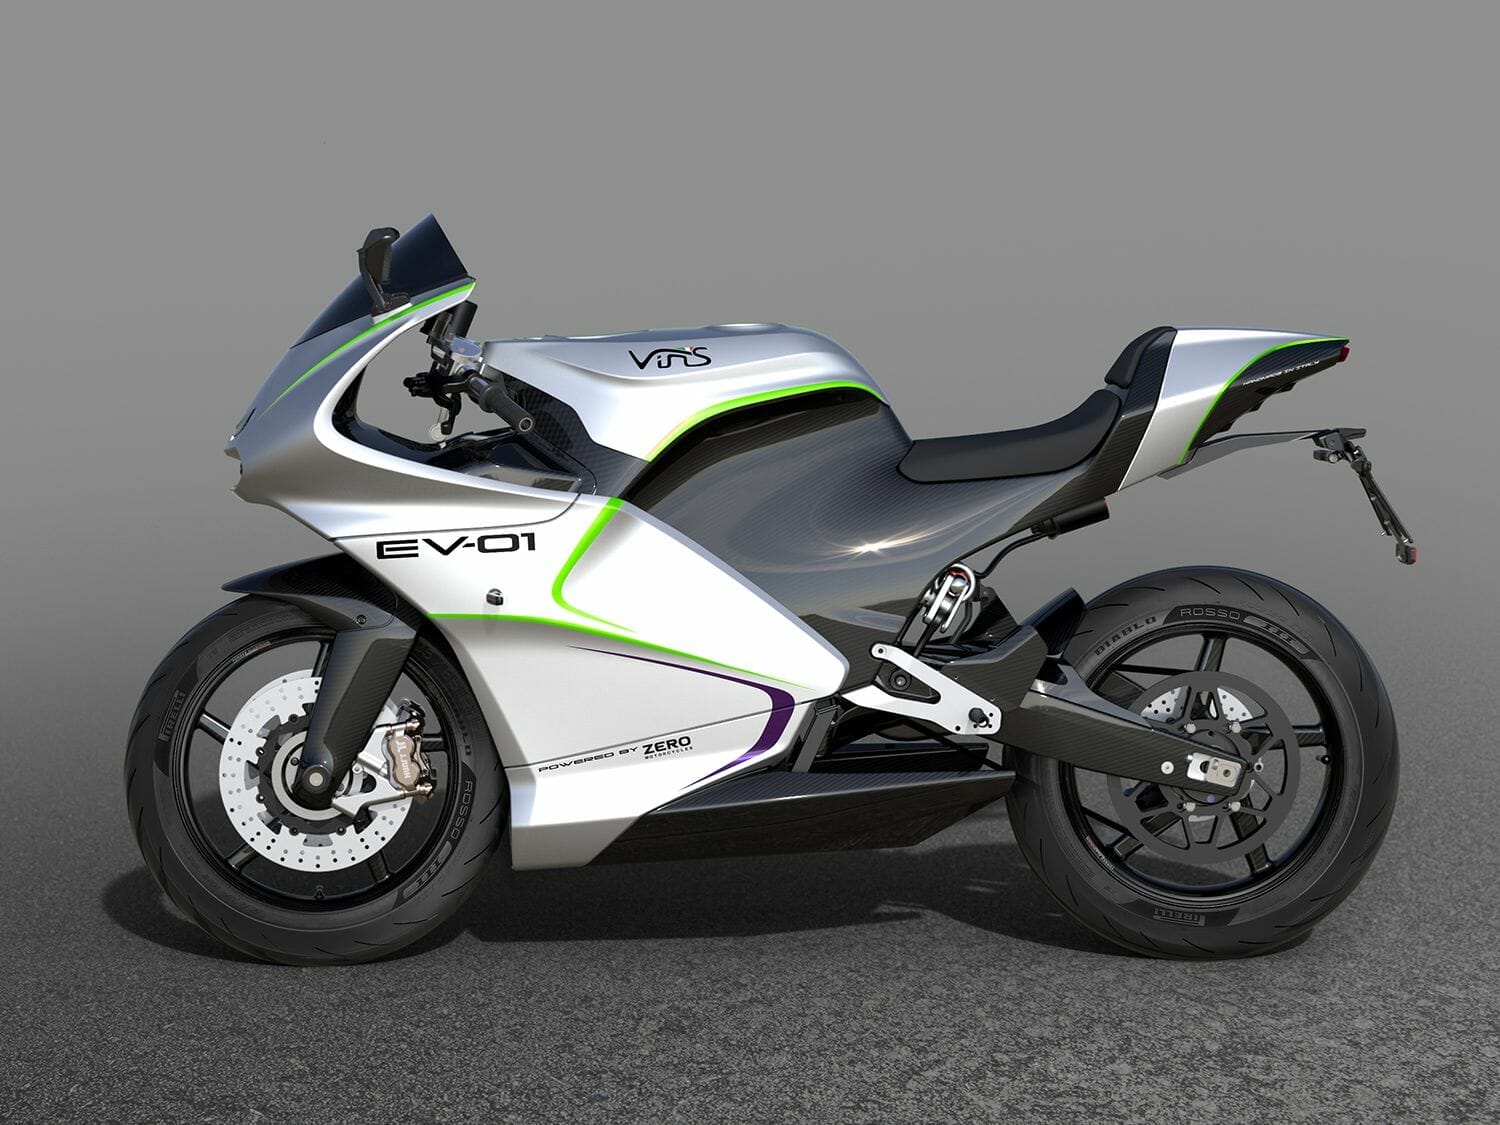 Elektro-Sport-Motorrad Vins EV-01
- auch in der Motorrad Nachrichten App